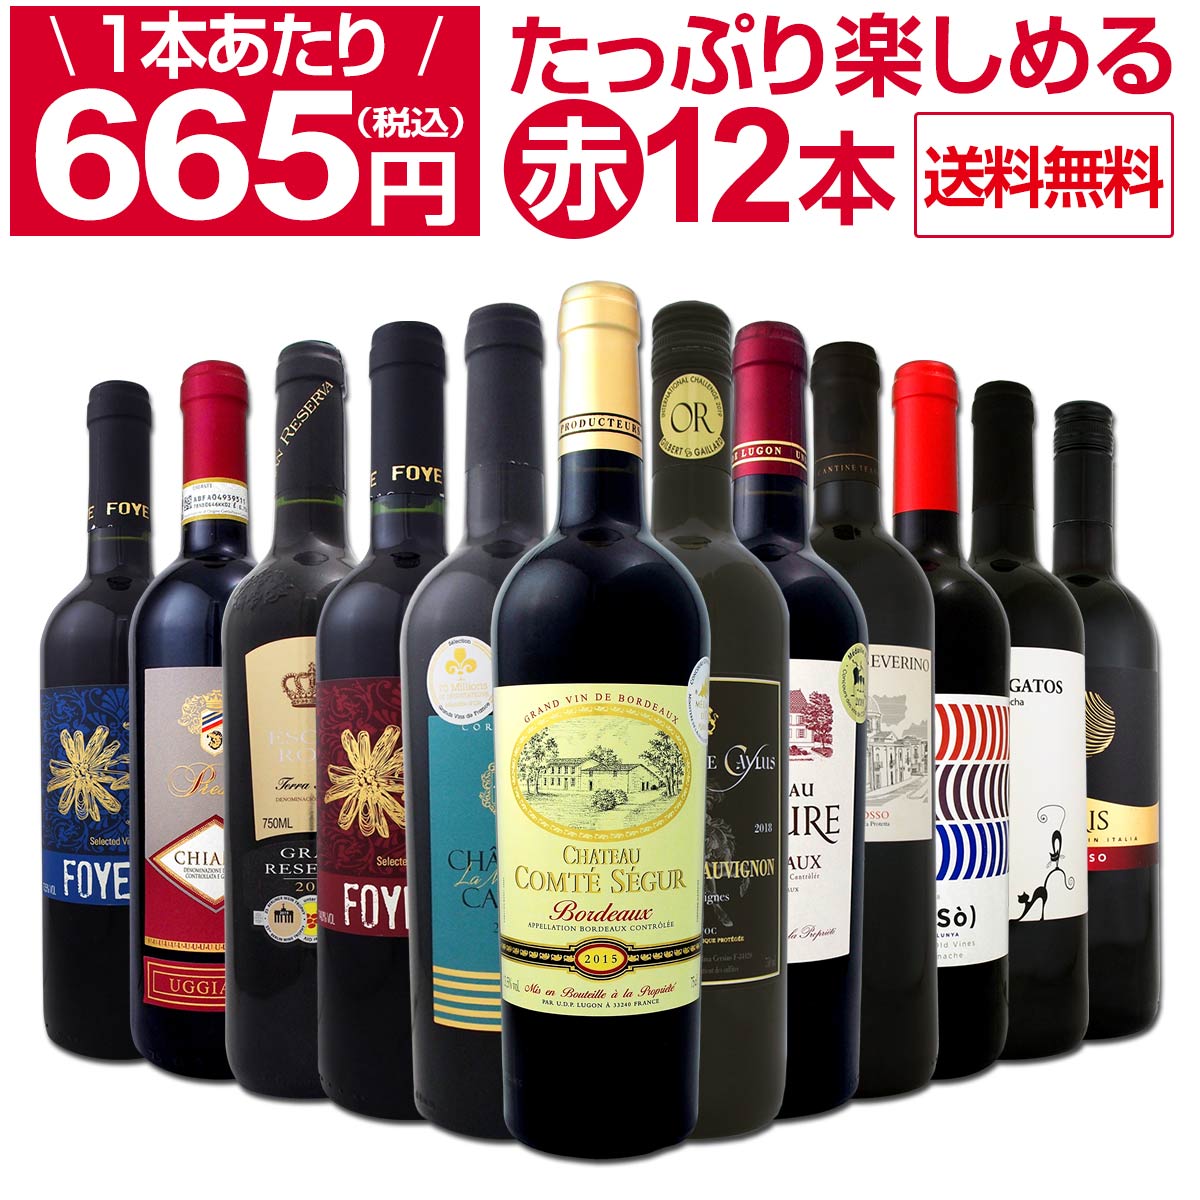 【送料無料】1本あたり665円(税別)!!採算度外視の大感謝!厳選赤ワイン12本セット